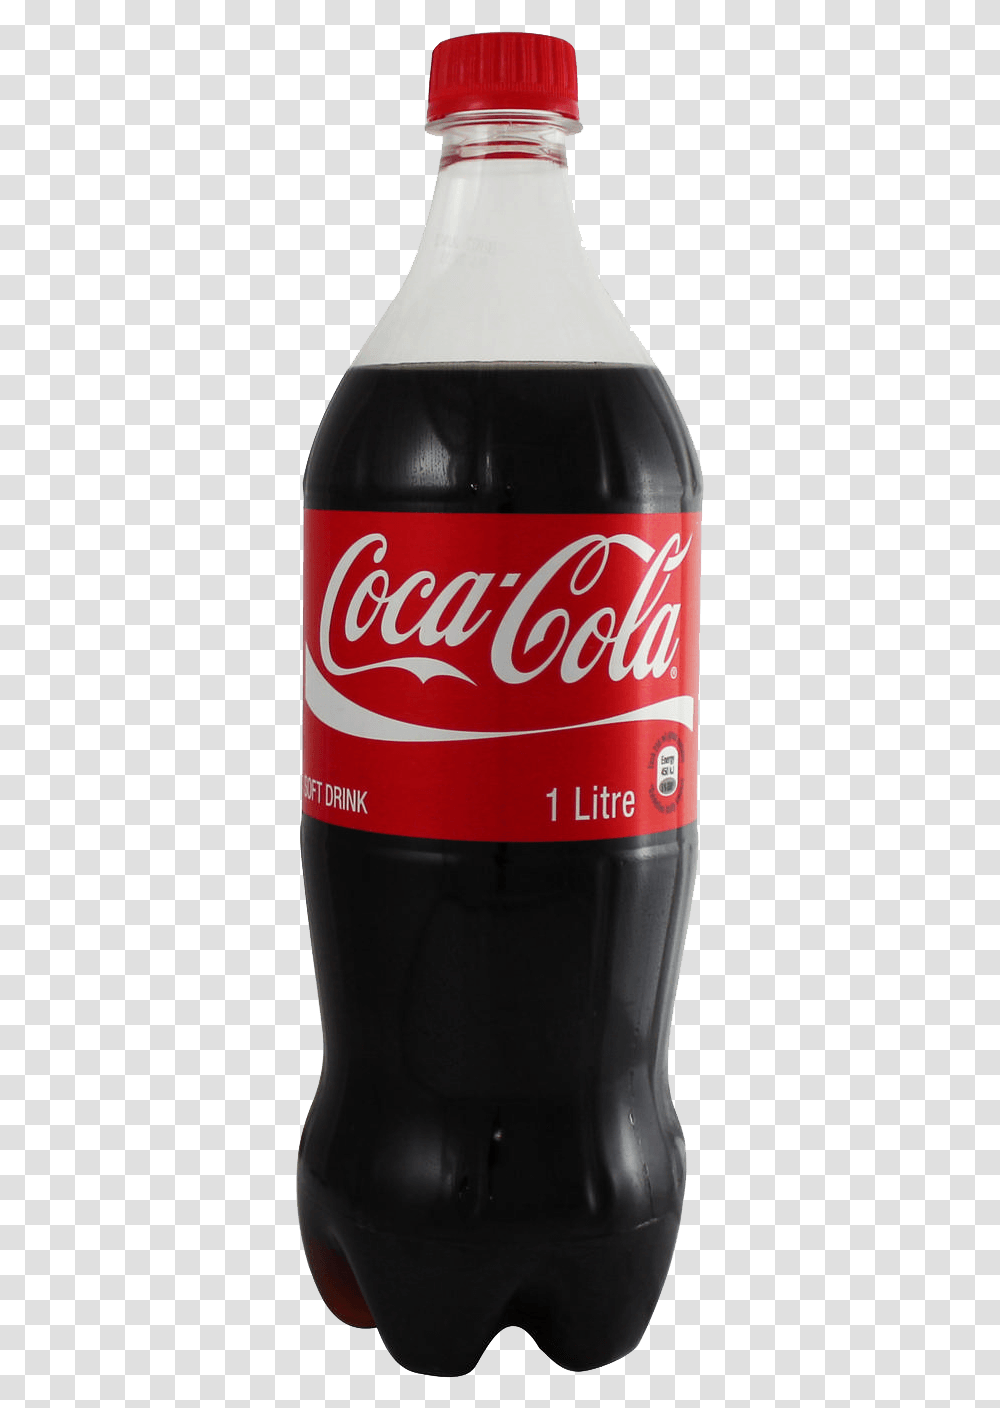 Coke 2 Liter Coca Cola 1.25 Ml, Beverage, Drink, Beer, Alcohol Transparent Png